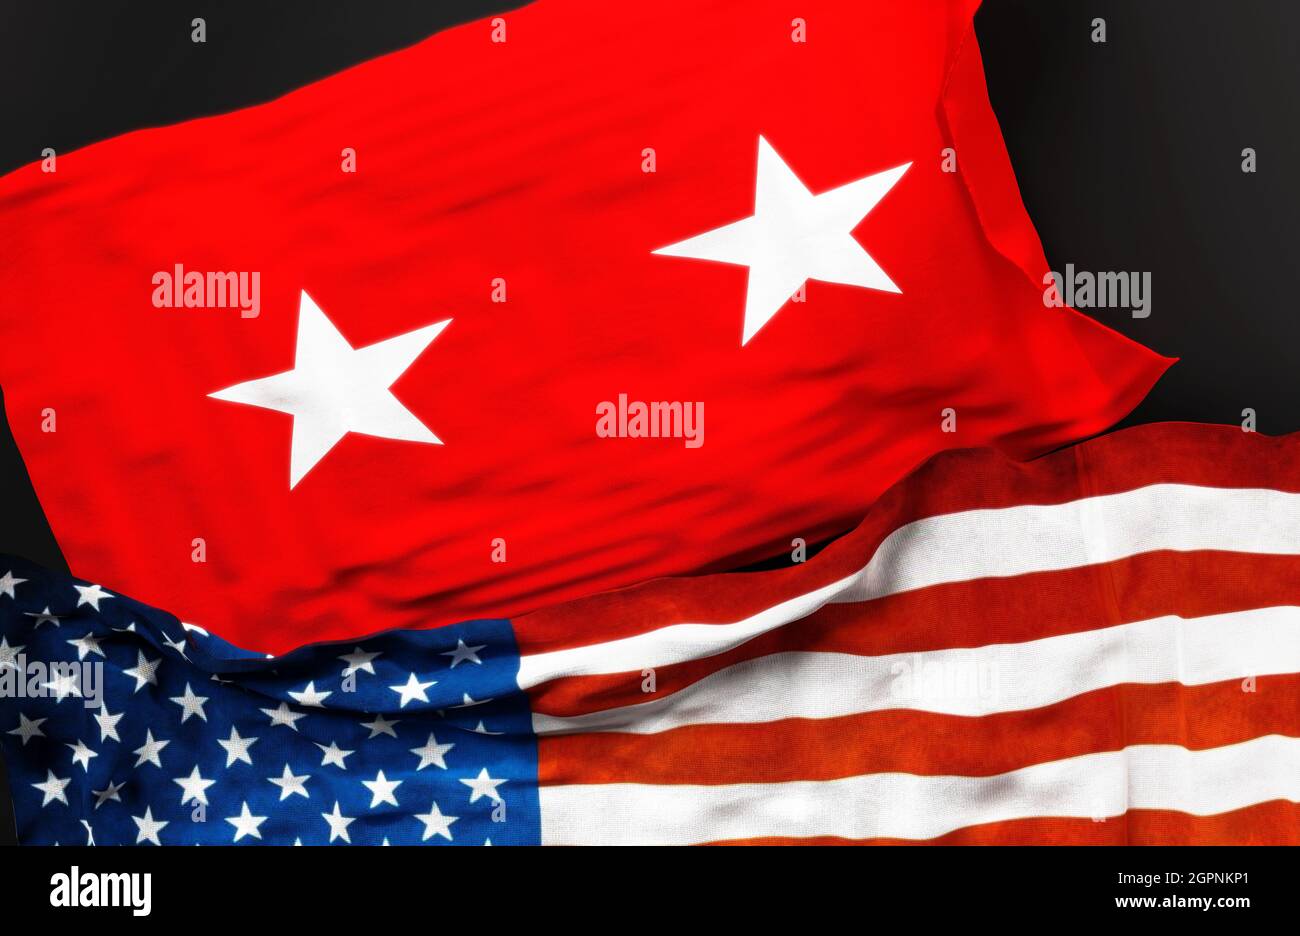 Bandera de un General de División del Ejército de los Estados Unidos junto con una bandera de los Estados Unidos de América como símbolo de unidad entre ellos, 3D ilustración Foto de stock